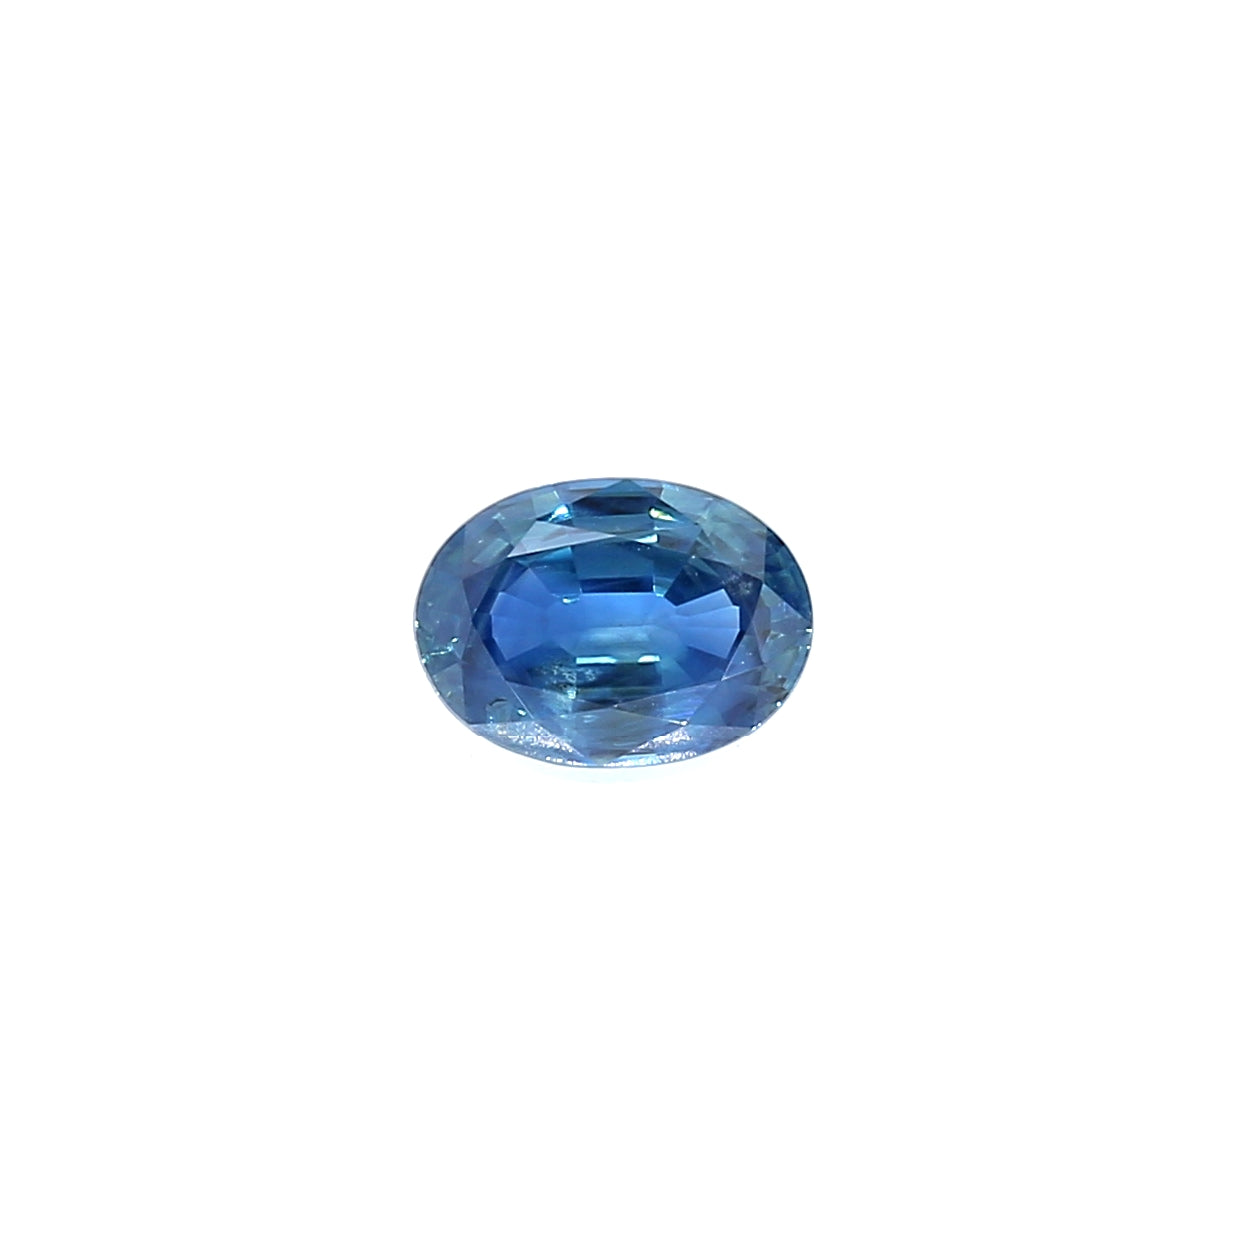 0.98ct Greenish Blue, Oval Sapphire, Heated, Sri Lanka - 6.99 x 5.11 x 3.13mm